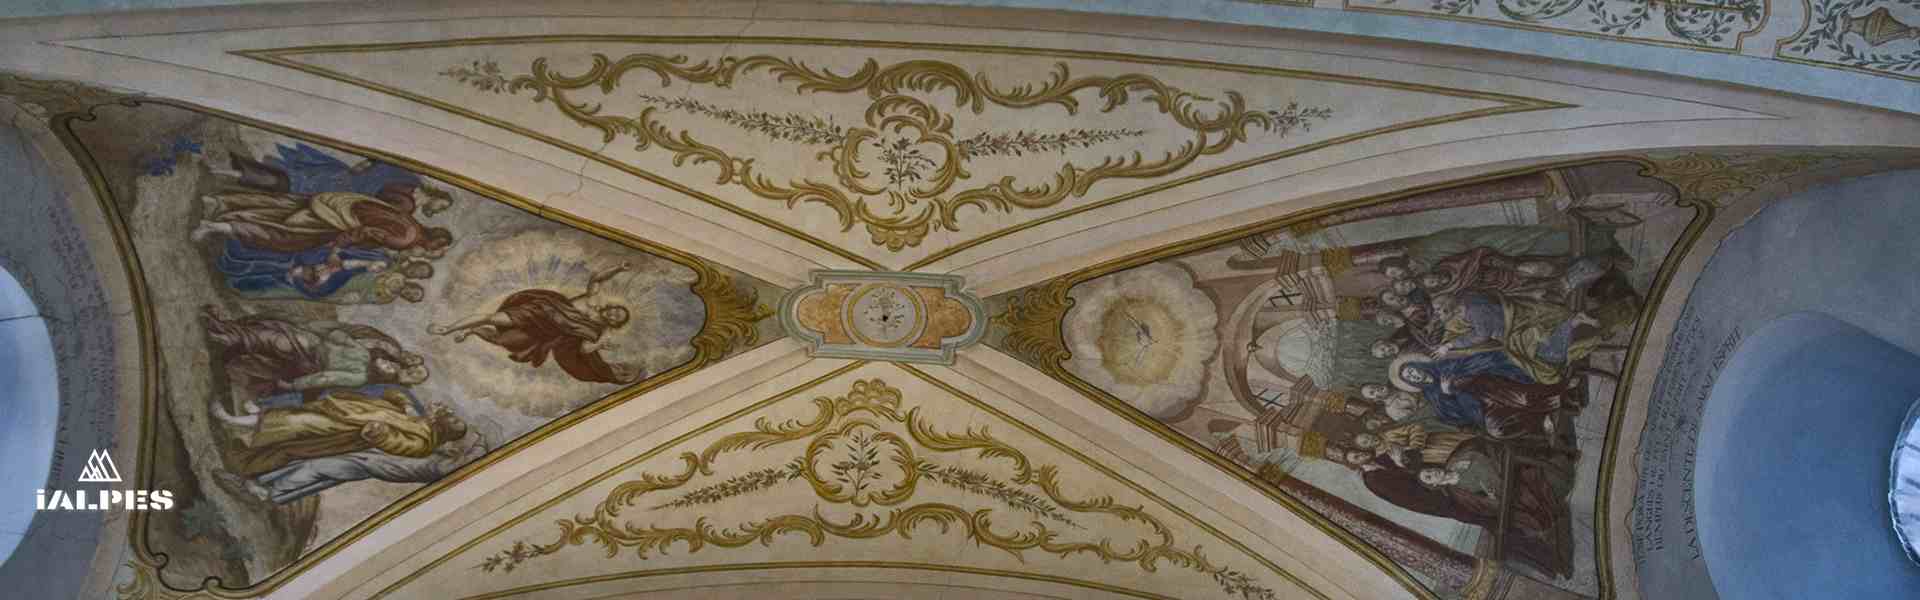 Plafond peint de la chapelle de Cordon